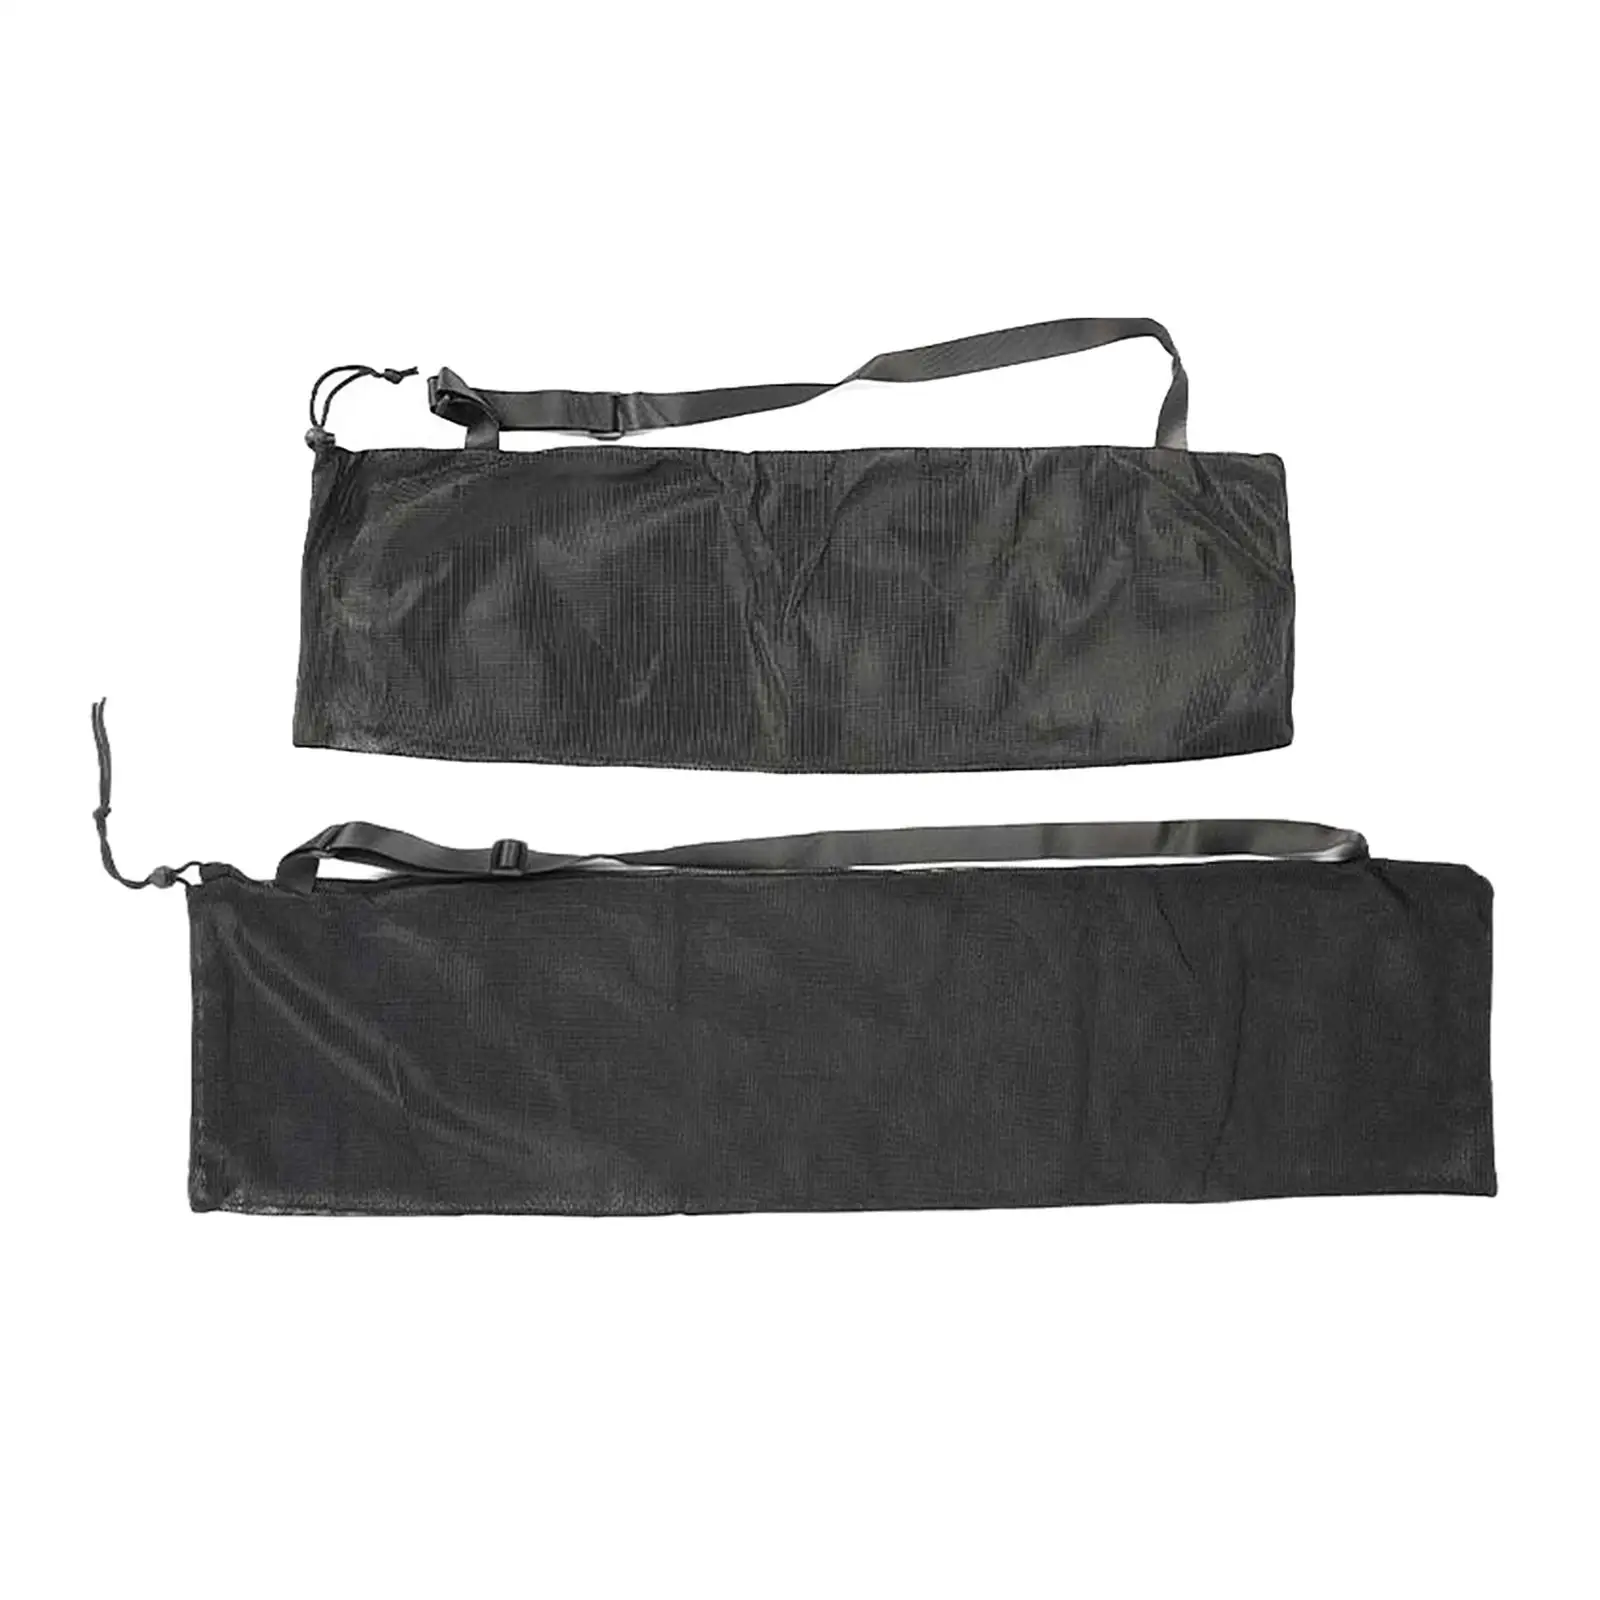 Drawstring Mesh paddle Bag Adjustable Shoulder Strap Portable paddle Storage  Kayak Boat boat paddle Carry Bag for Transport